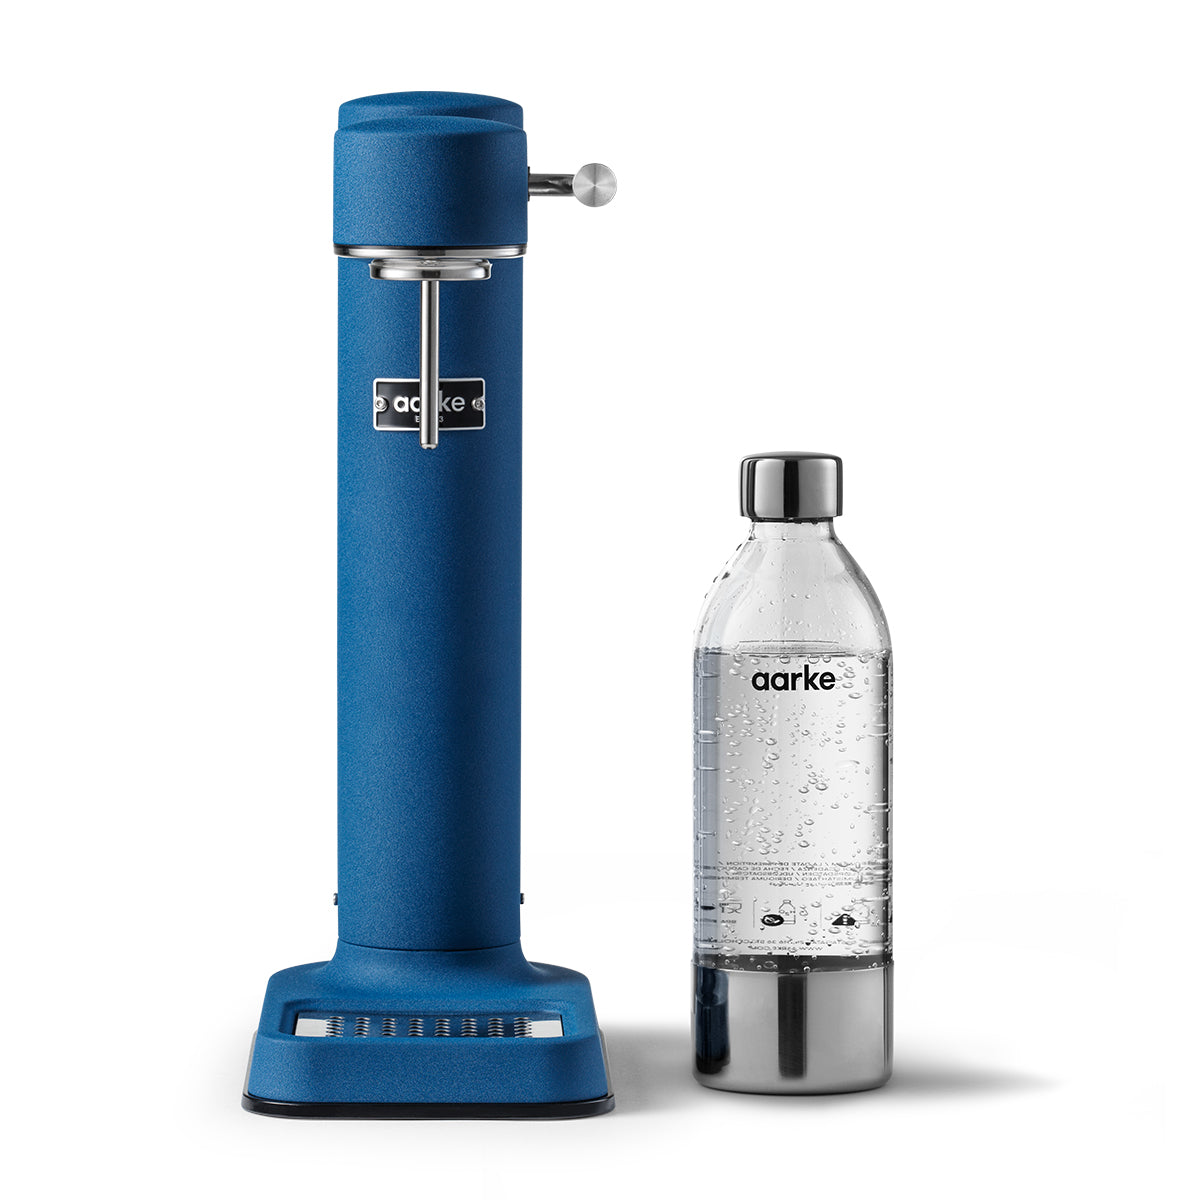 Aarke Carbonator 3 Sparkling Water Maker – Cobalt